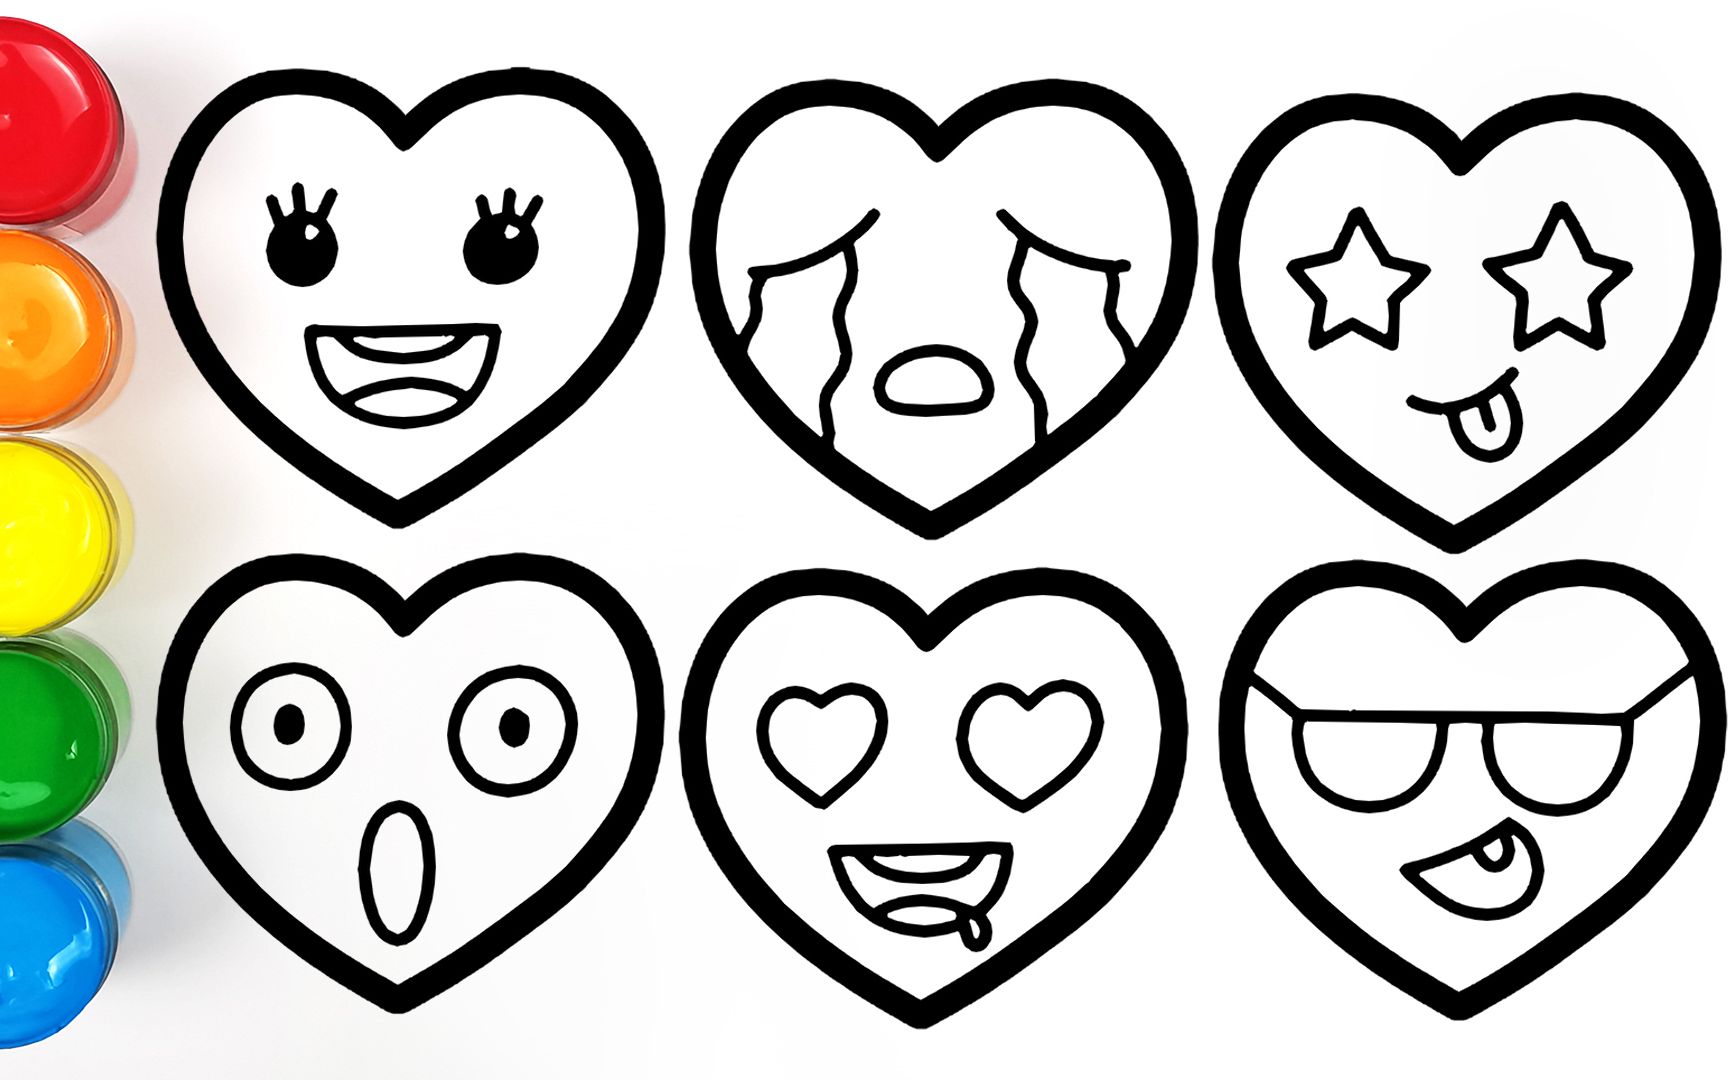 用emoji表情组成的图案图片